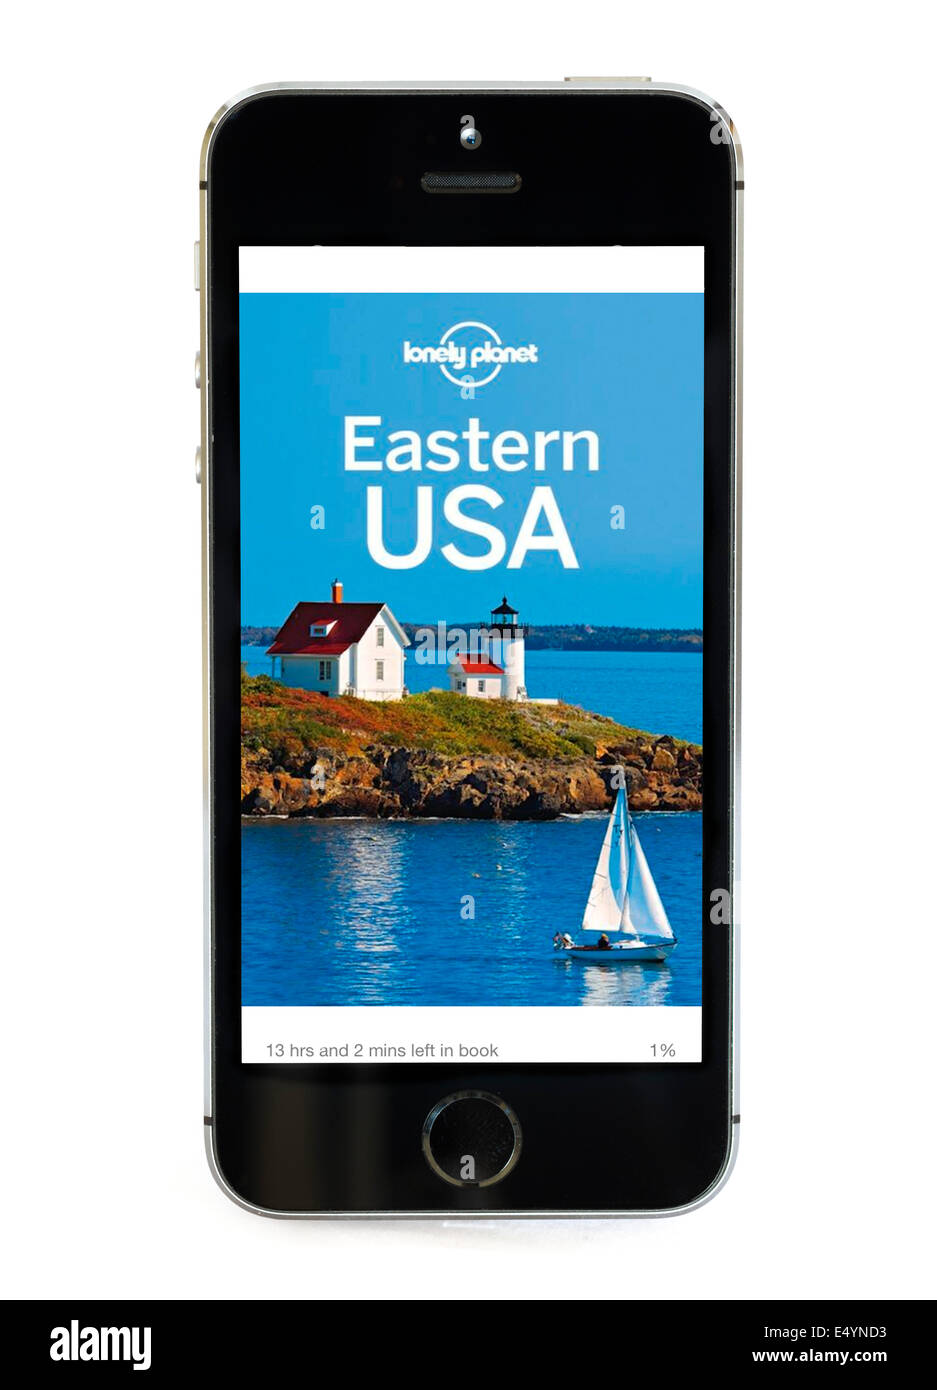 Guide sur l'Est des États-Unis par Lonely Planet affichée sur Apple iPhone application Kindle. Banque D'Images